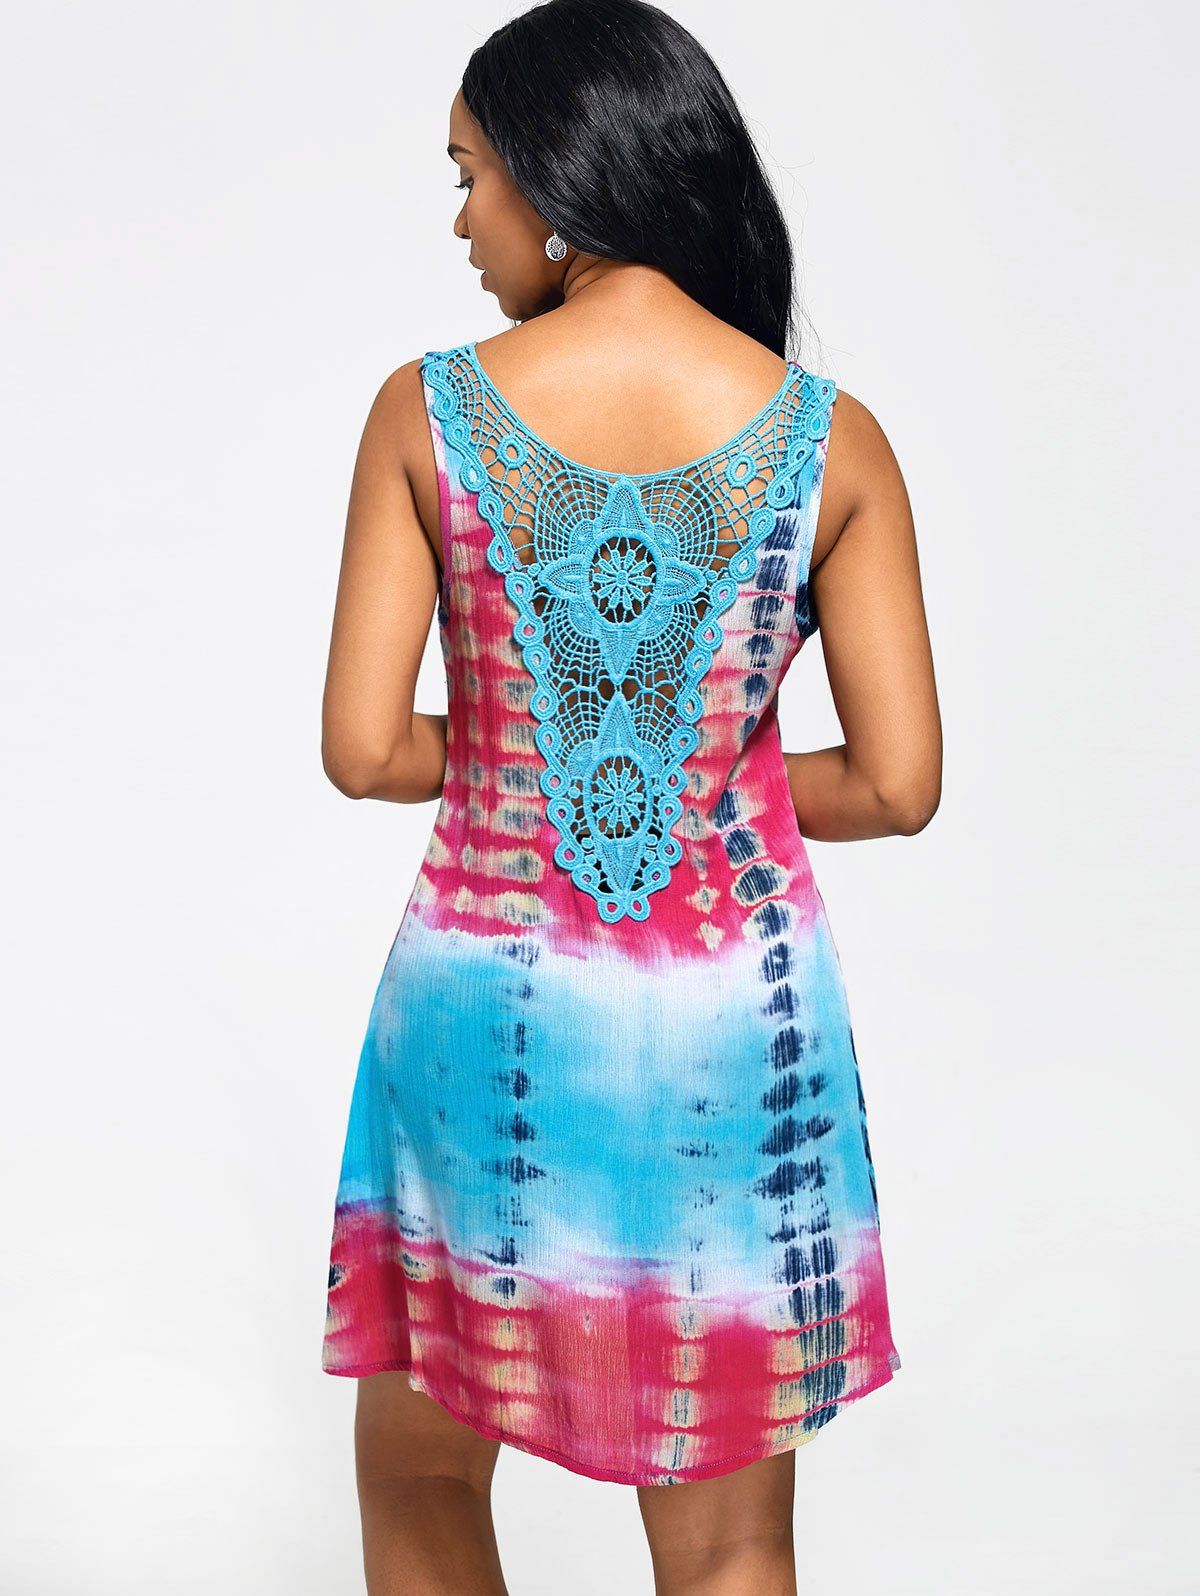 Fashion Lace Insert Tie-Dyed Sleeveless Tunic Dress  